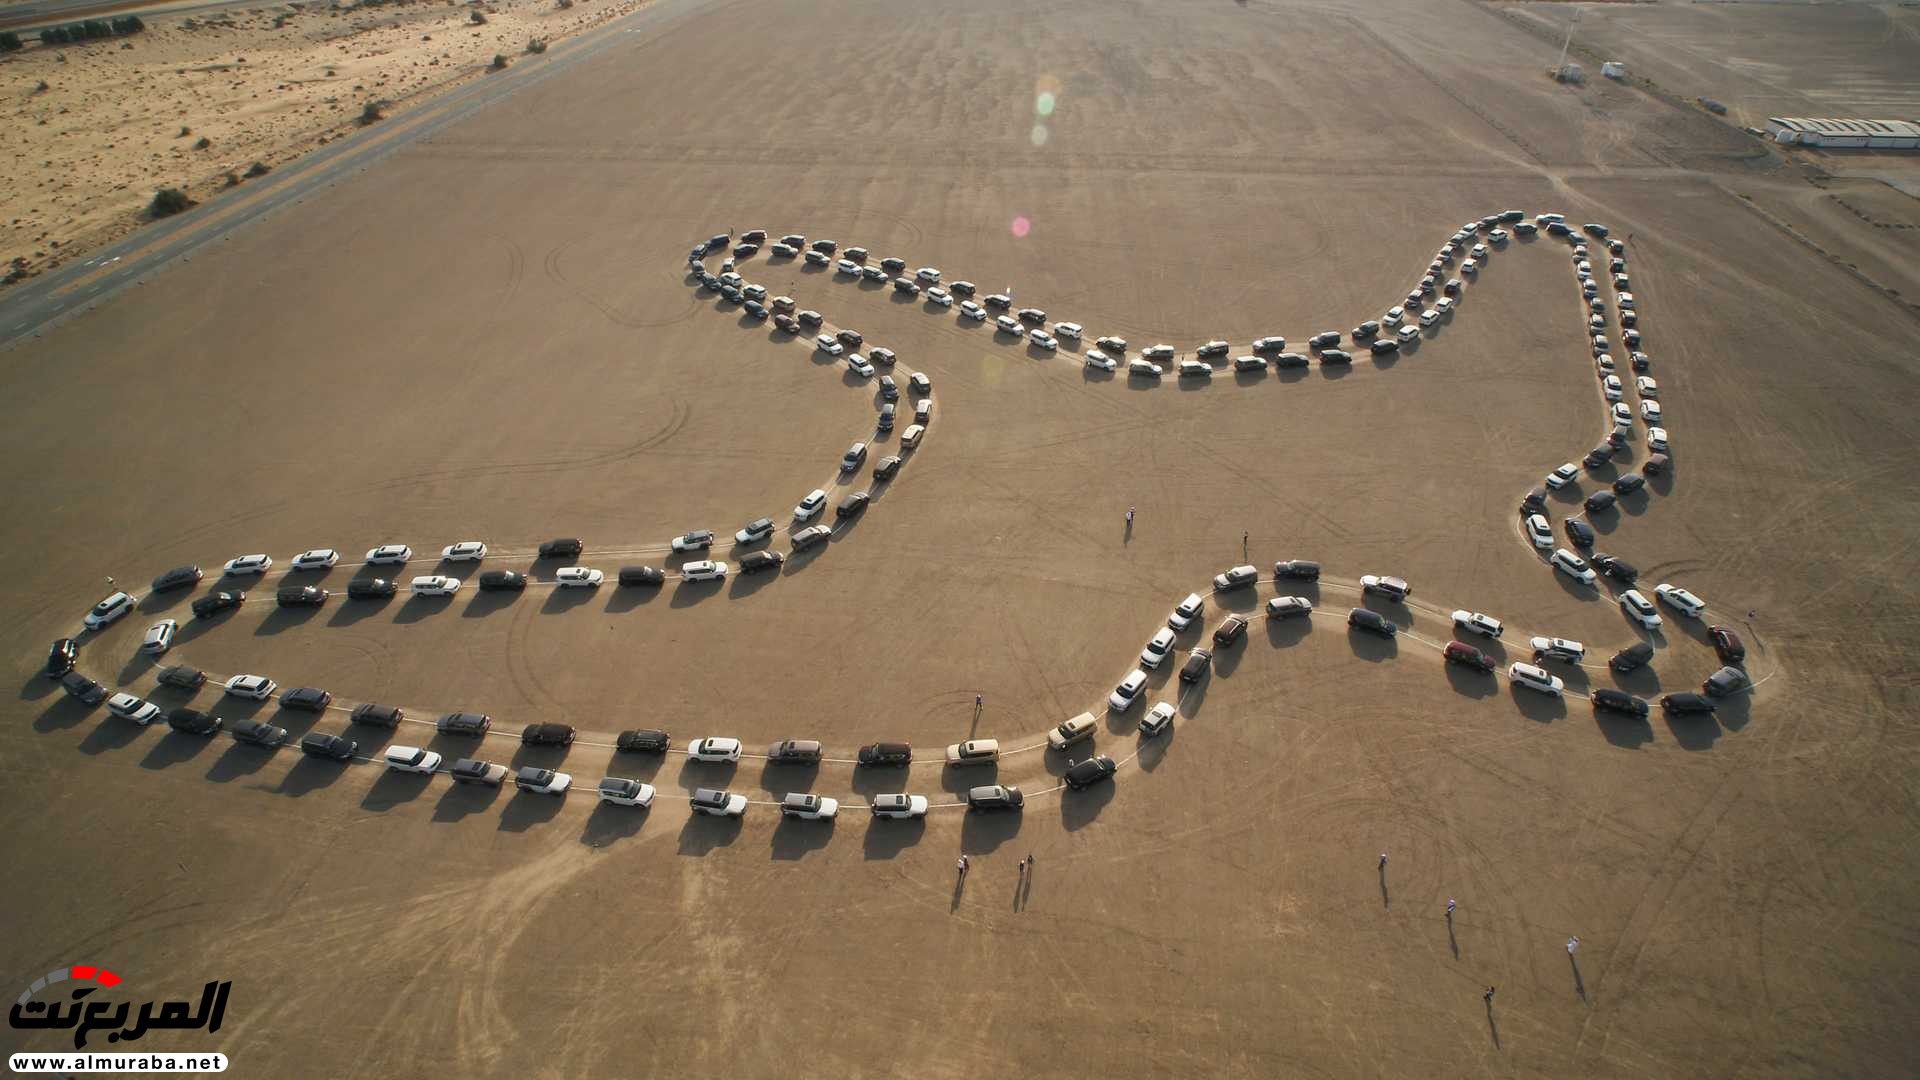 "بالفيديو والصور" نيسان باترول تحقق رقم قياسي في صحراء الإمارات 3